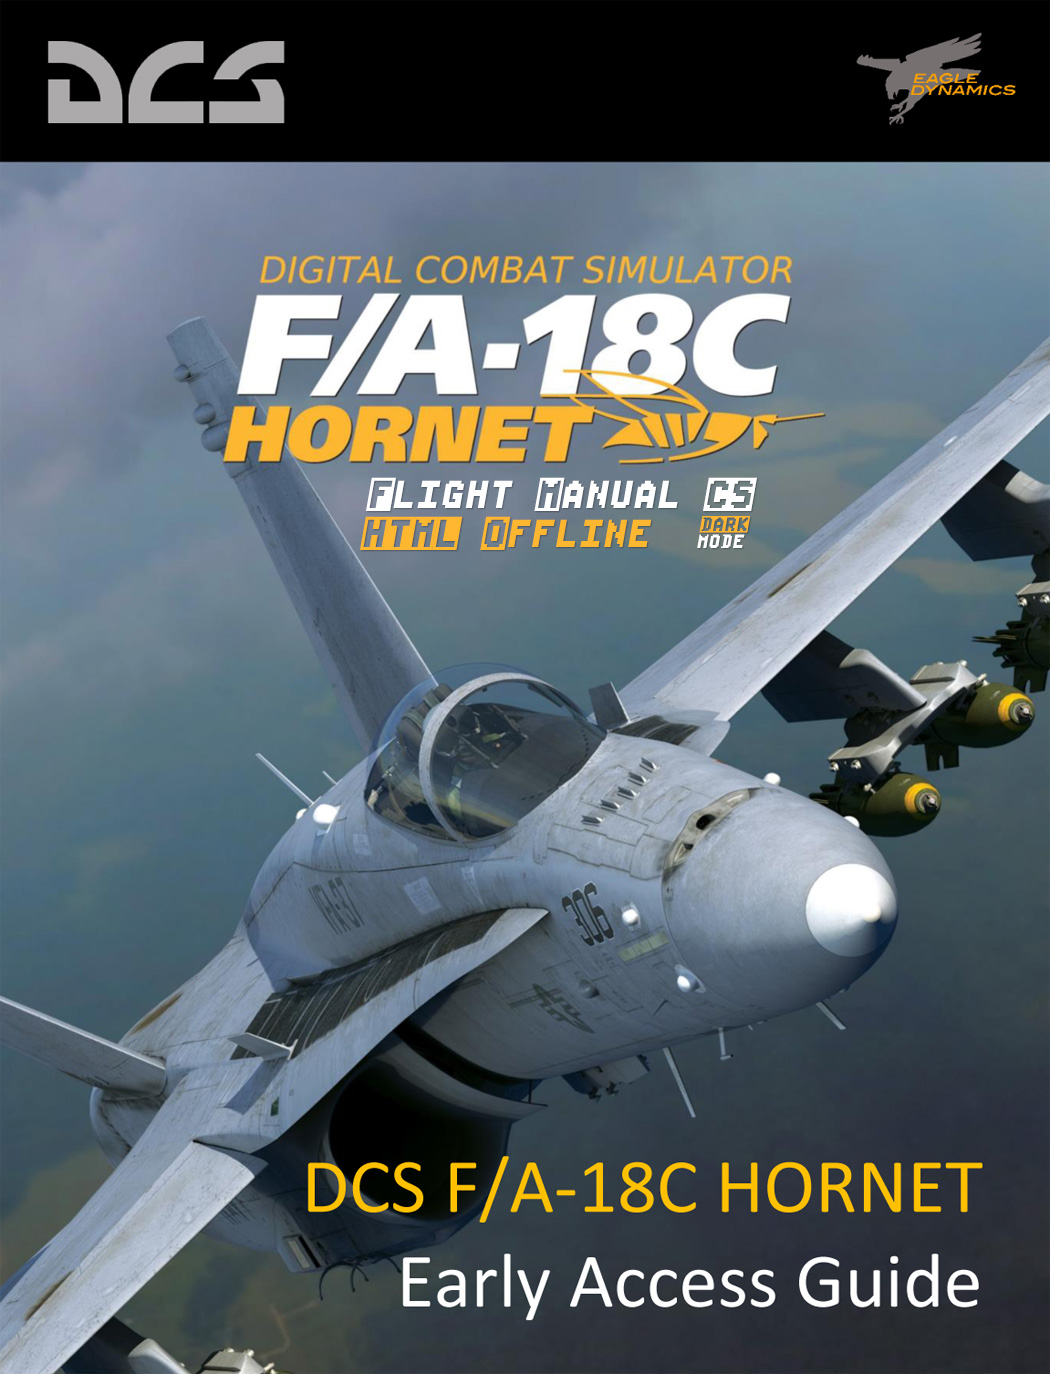 DCS F/A-18C HORNET Flight Manual (HTML offline) CZ 